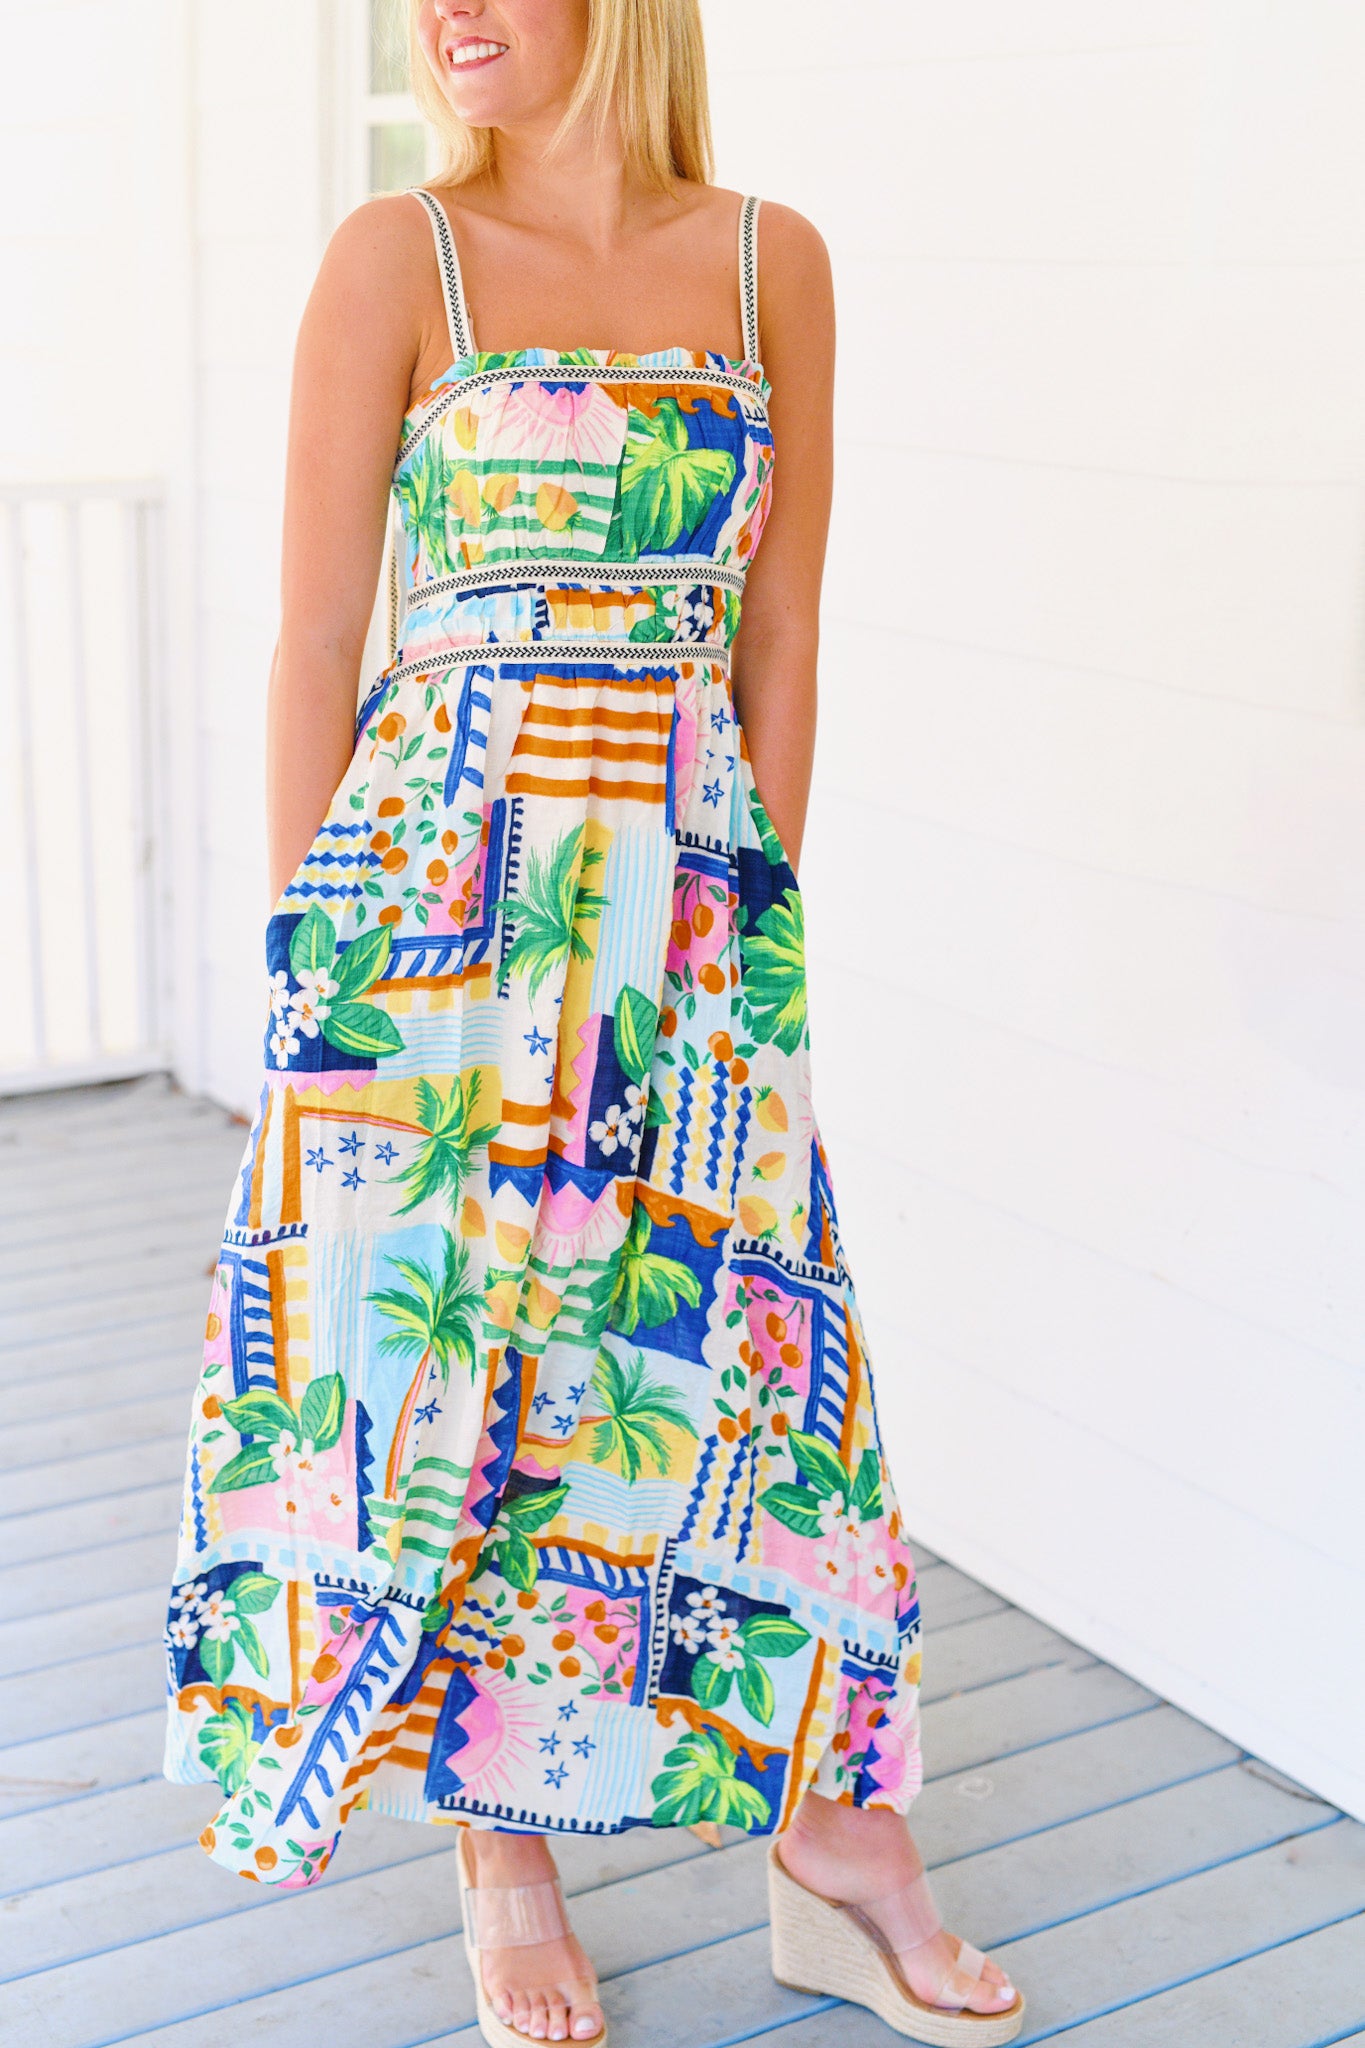 Rio Printed Dress - Multi